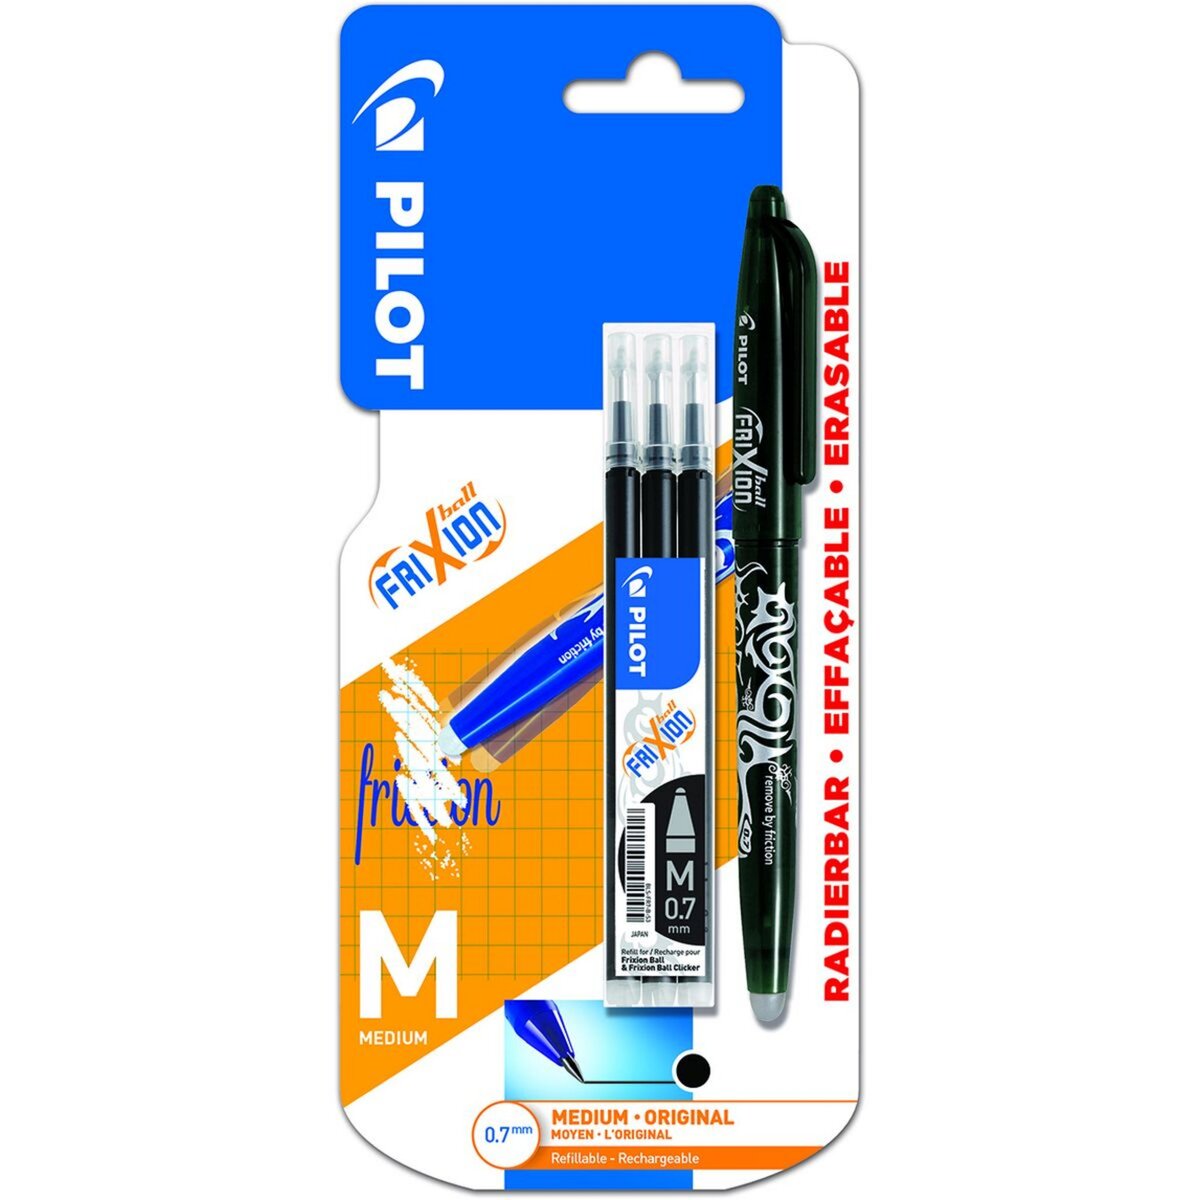 Qu'est-ce qu'un stylo à friction ?